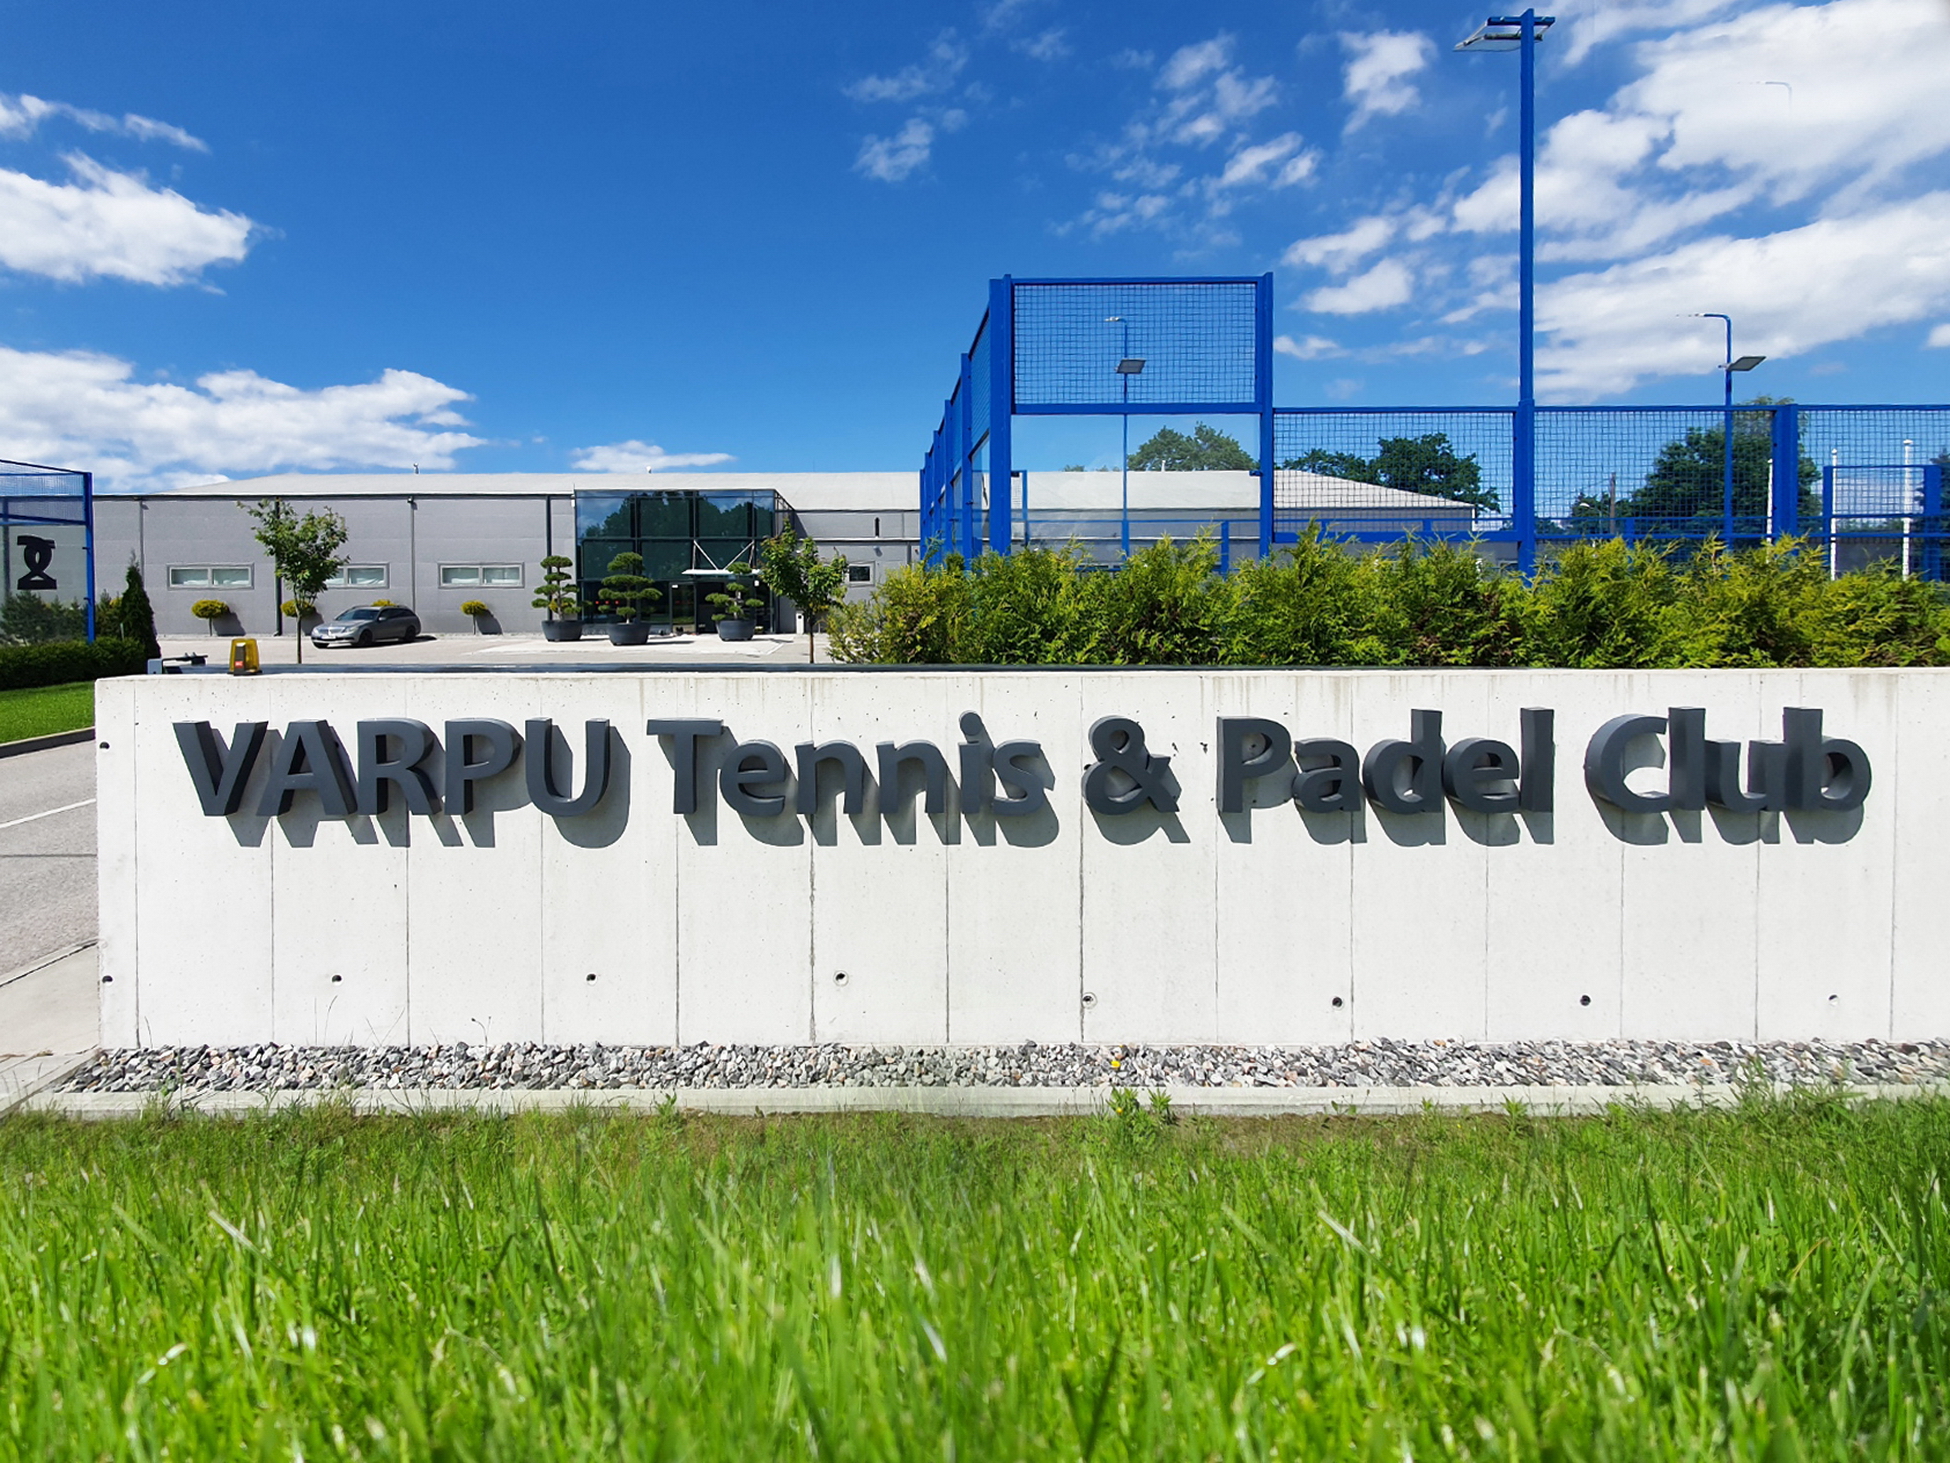 VARPU Tennis & Padel Club